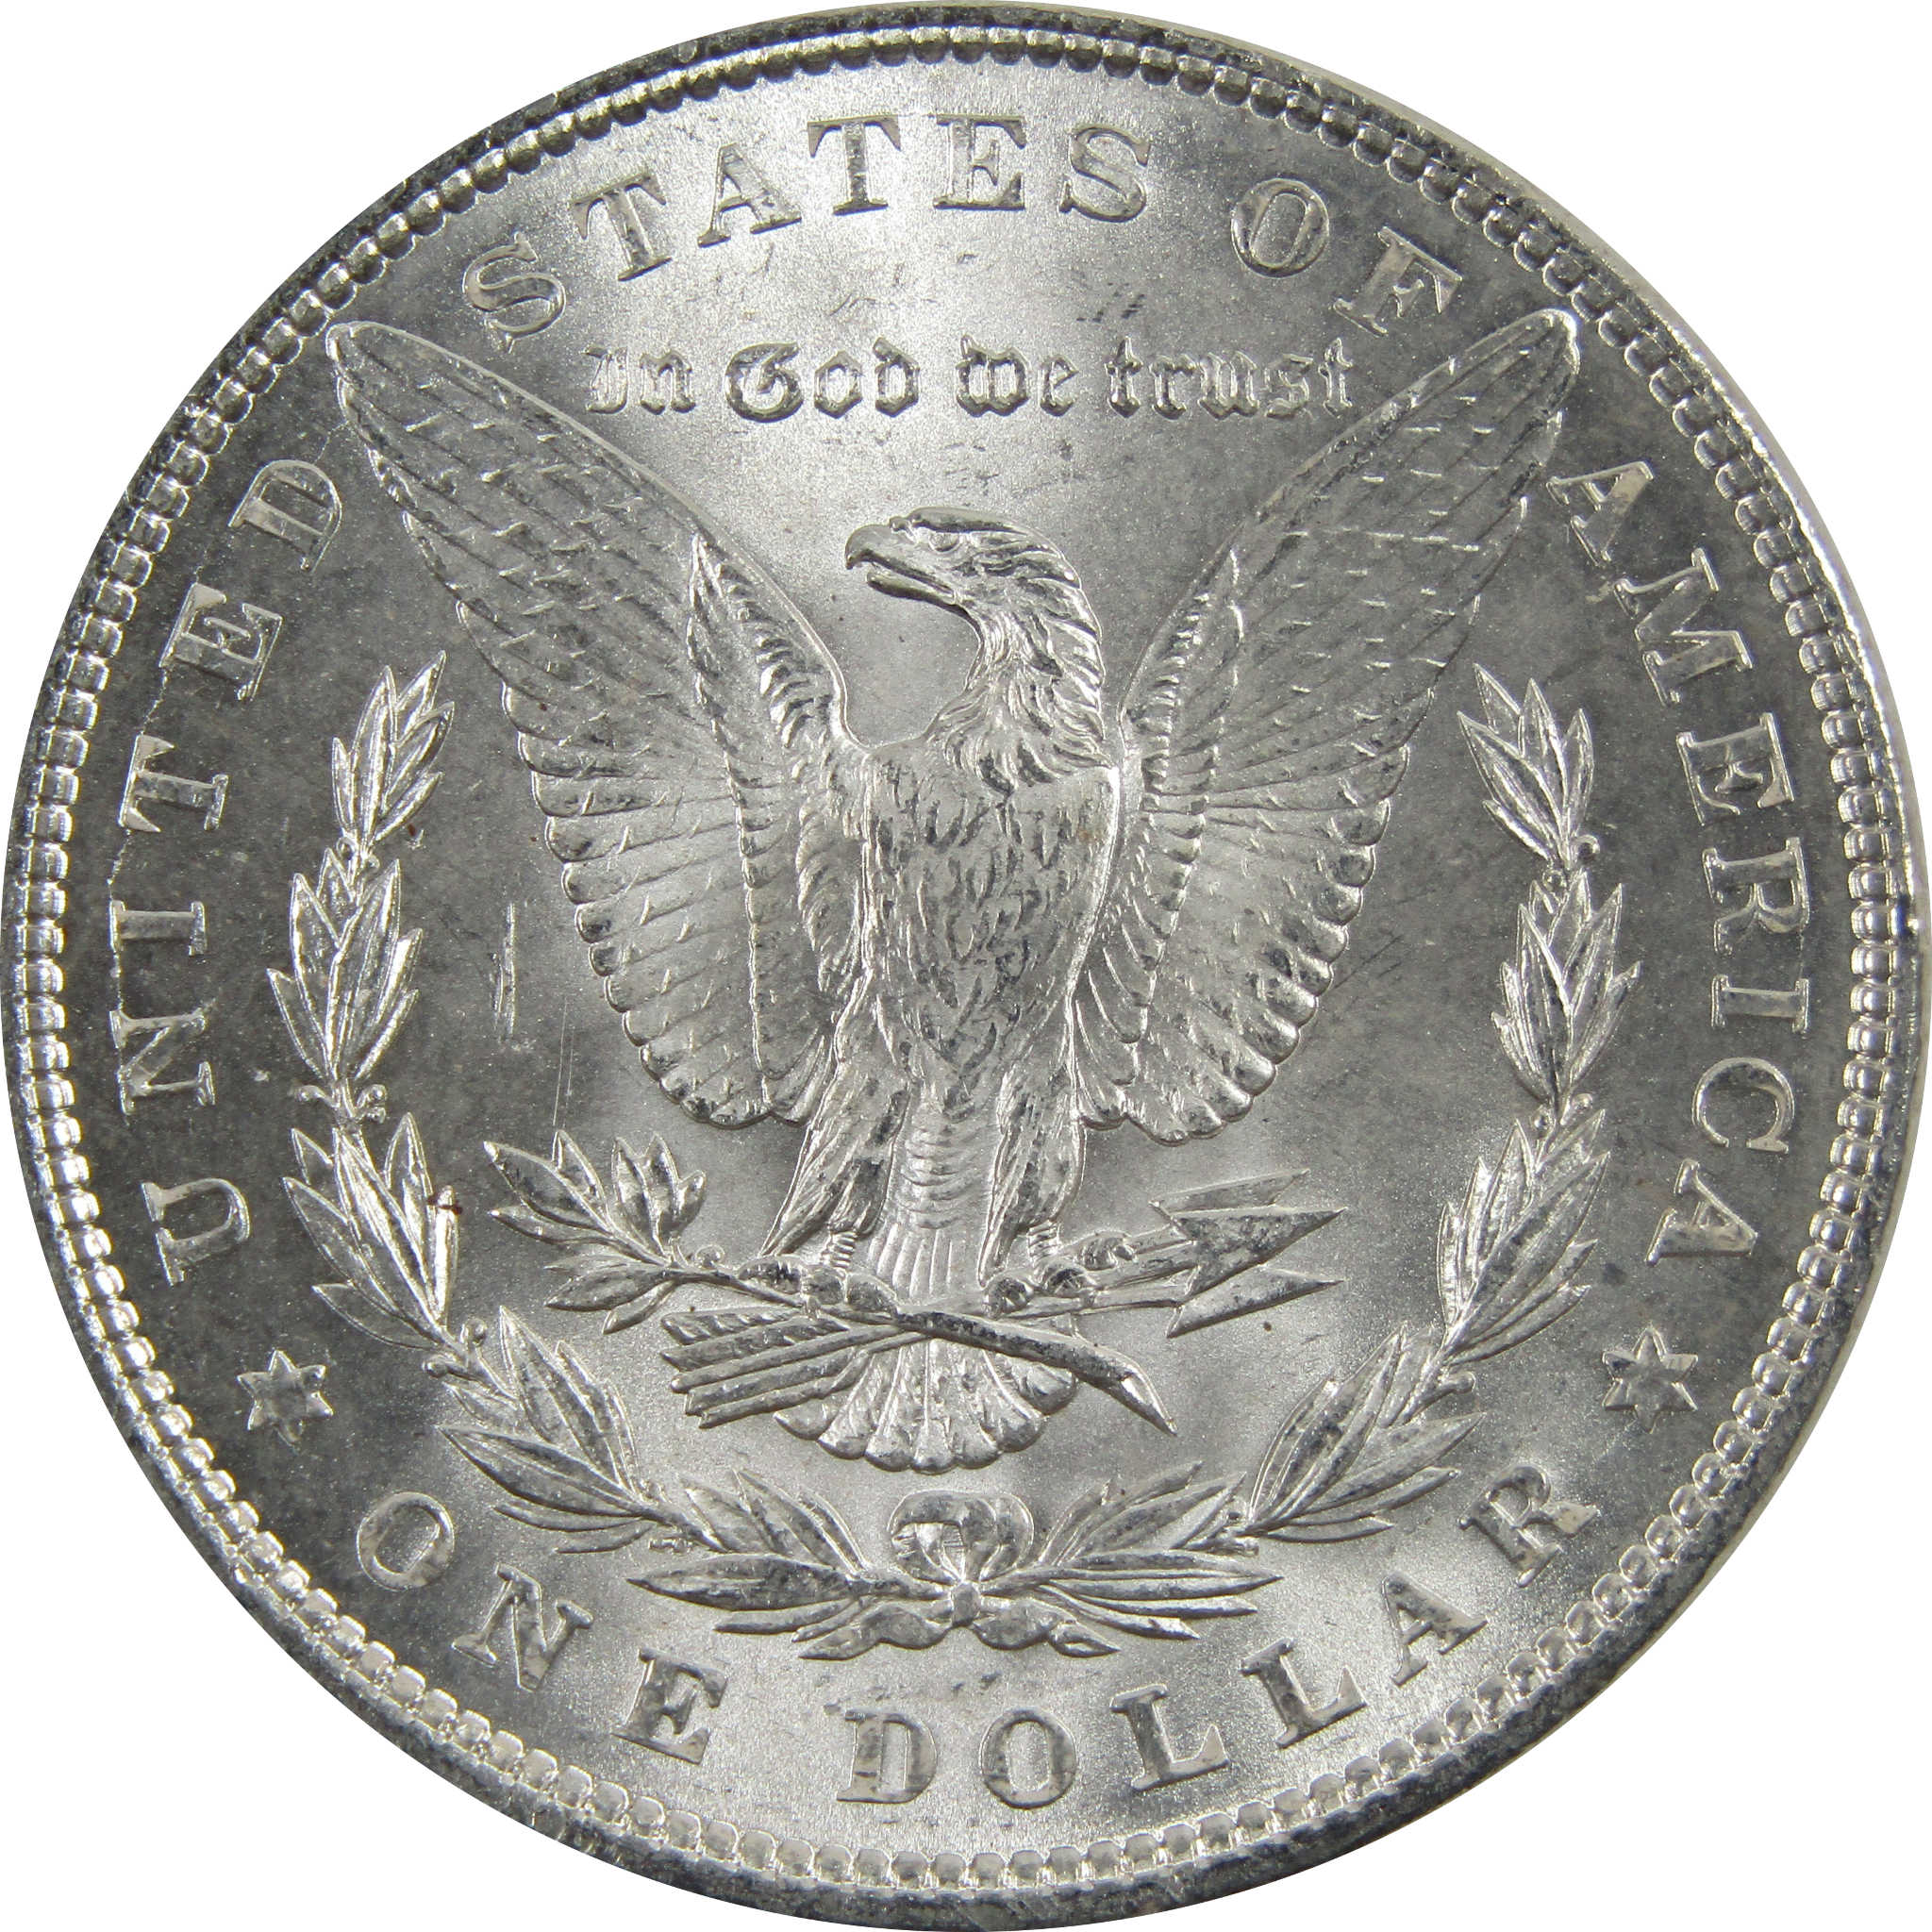 1897 Morgan Dollar BU Uncirculated 90% Silver $1 Coin SKU:I5160 - Morgan coin - Morgan silver dollar - Morgan silver dollar for sale - Profile Coins &amp; Collectibles